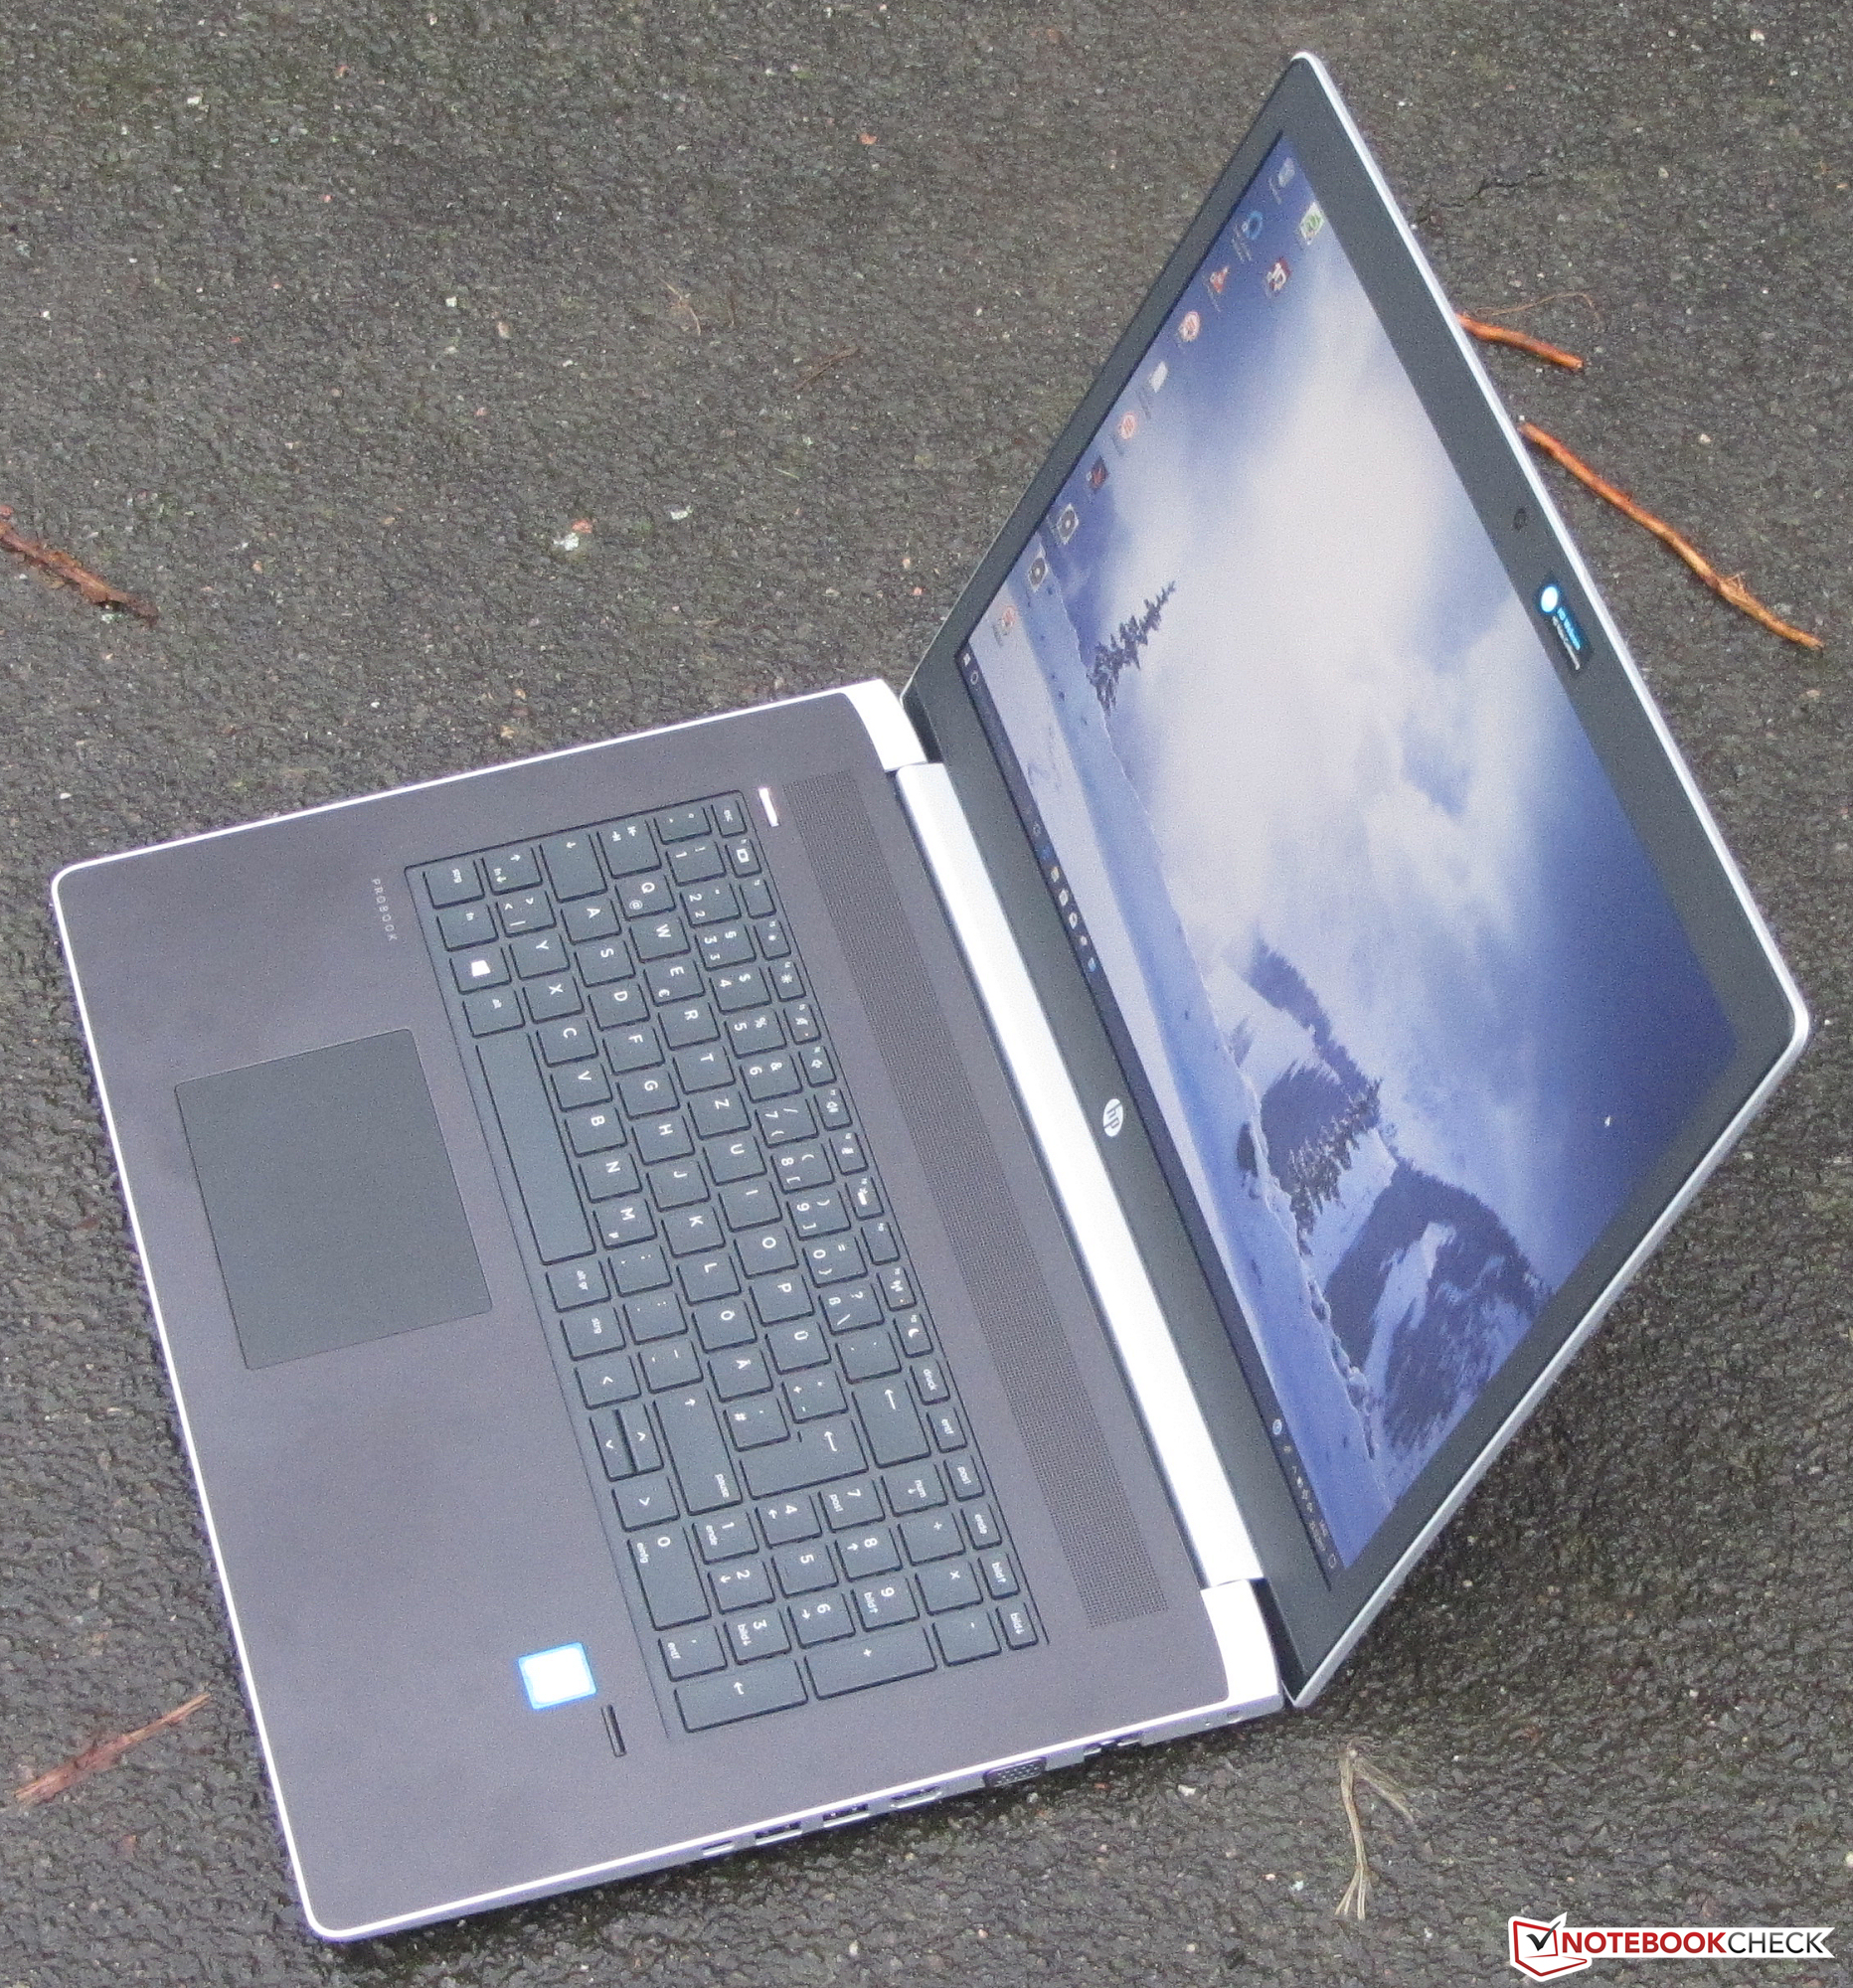 HP ProBook 470 G5 (i5-8250U, 930MX, SSD, FHD) Laptop Review - NotebookCheck.net Reviews1864 x 2000